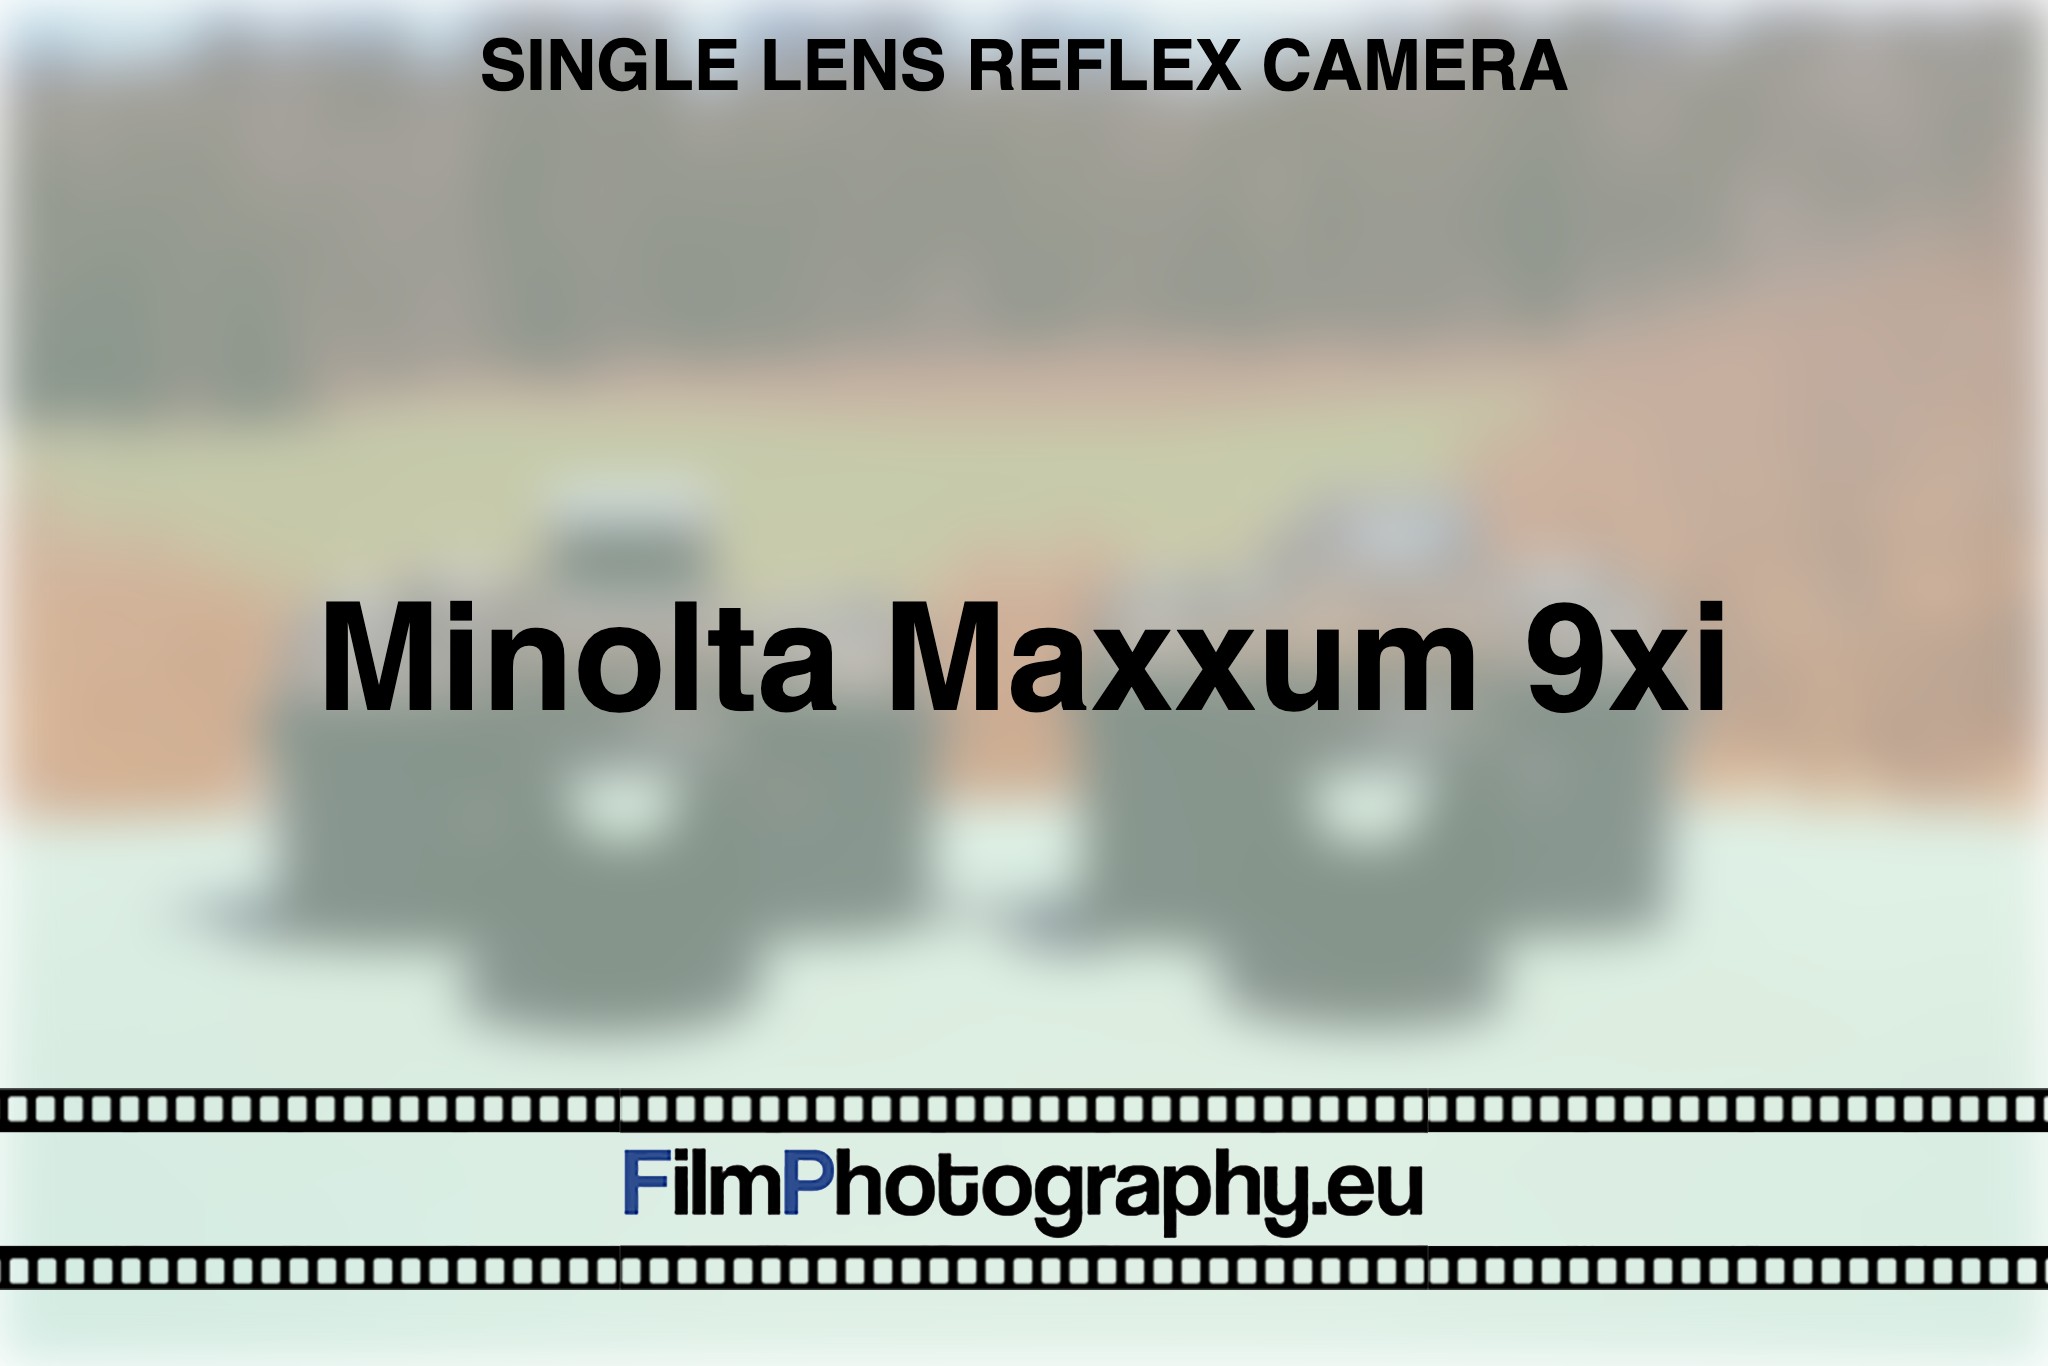 minolta-maxxum-9xi-single-lens-reflex-camera-bnv